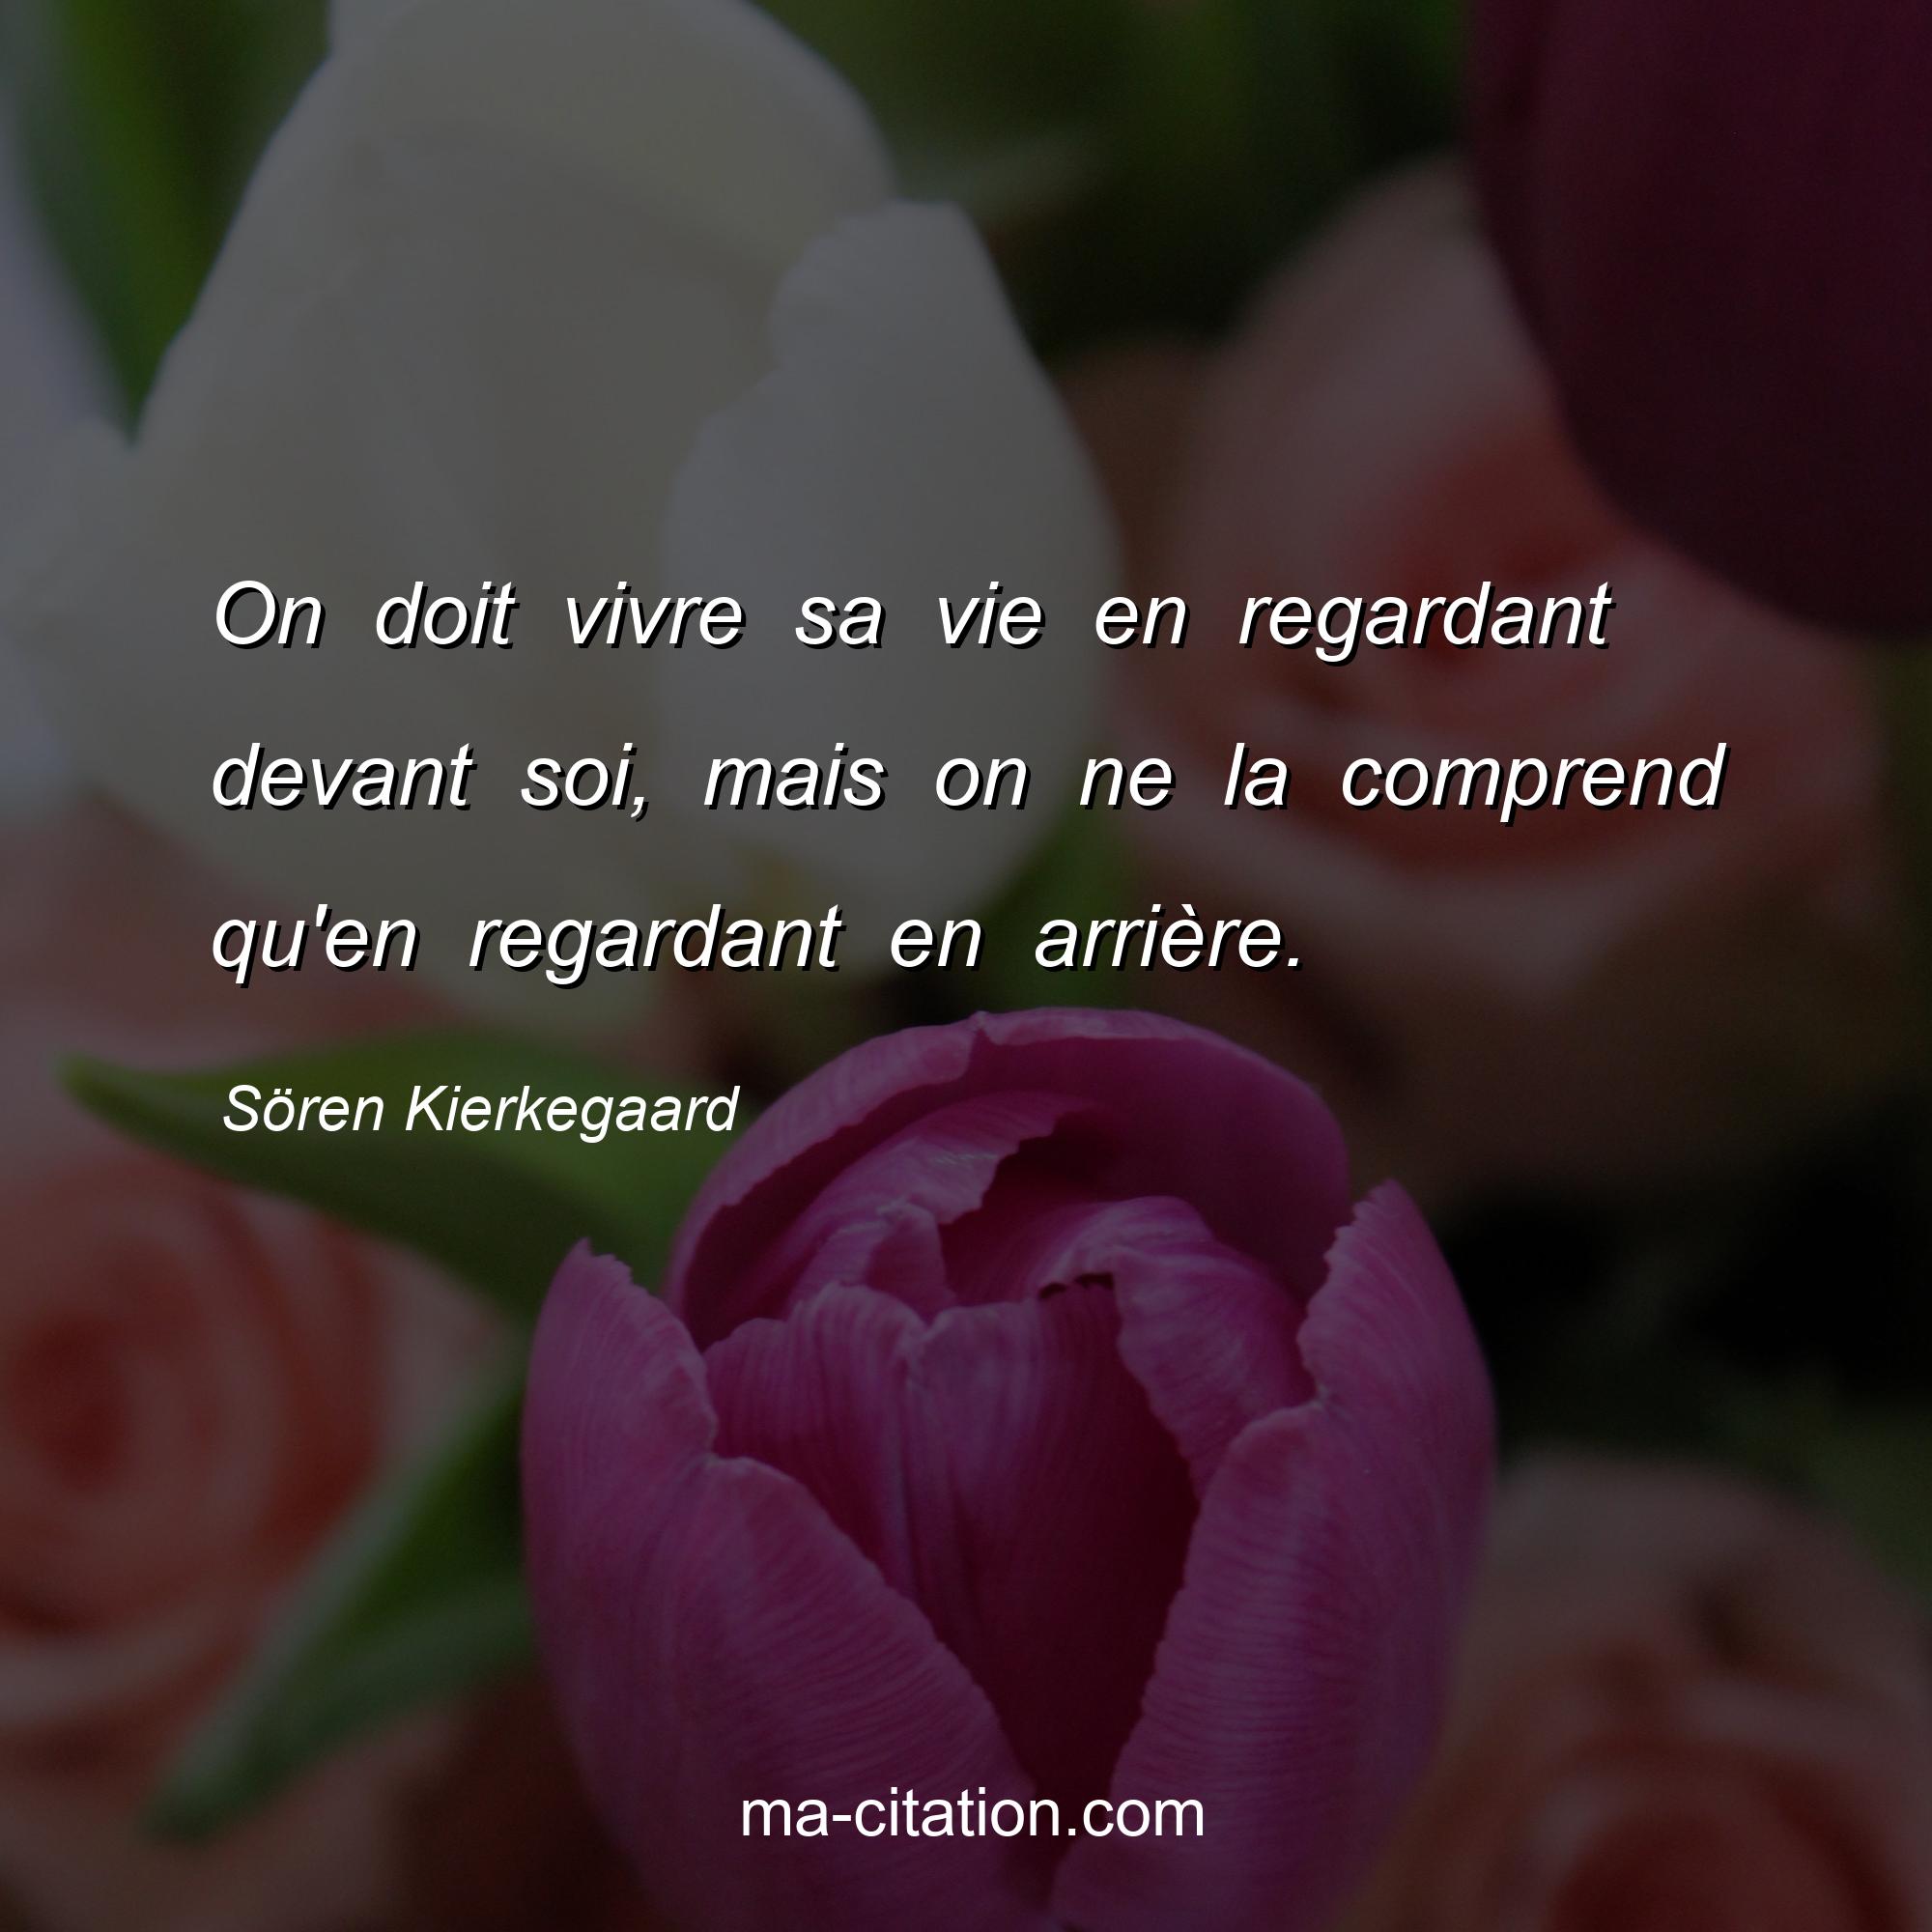 Sören Kierkegaard : On doit vivre sa vie en regardant devant soi, mais on ne la comprend qu'en regardant en arrière.